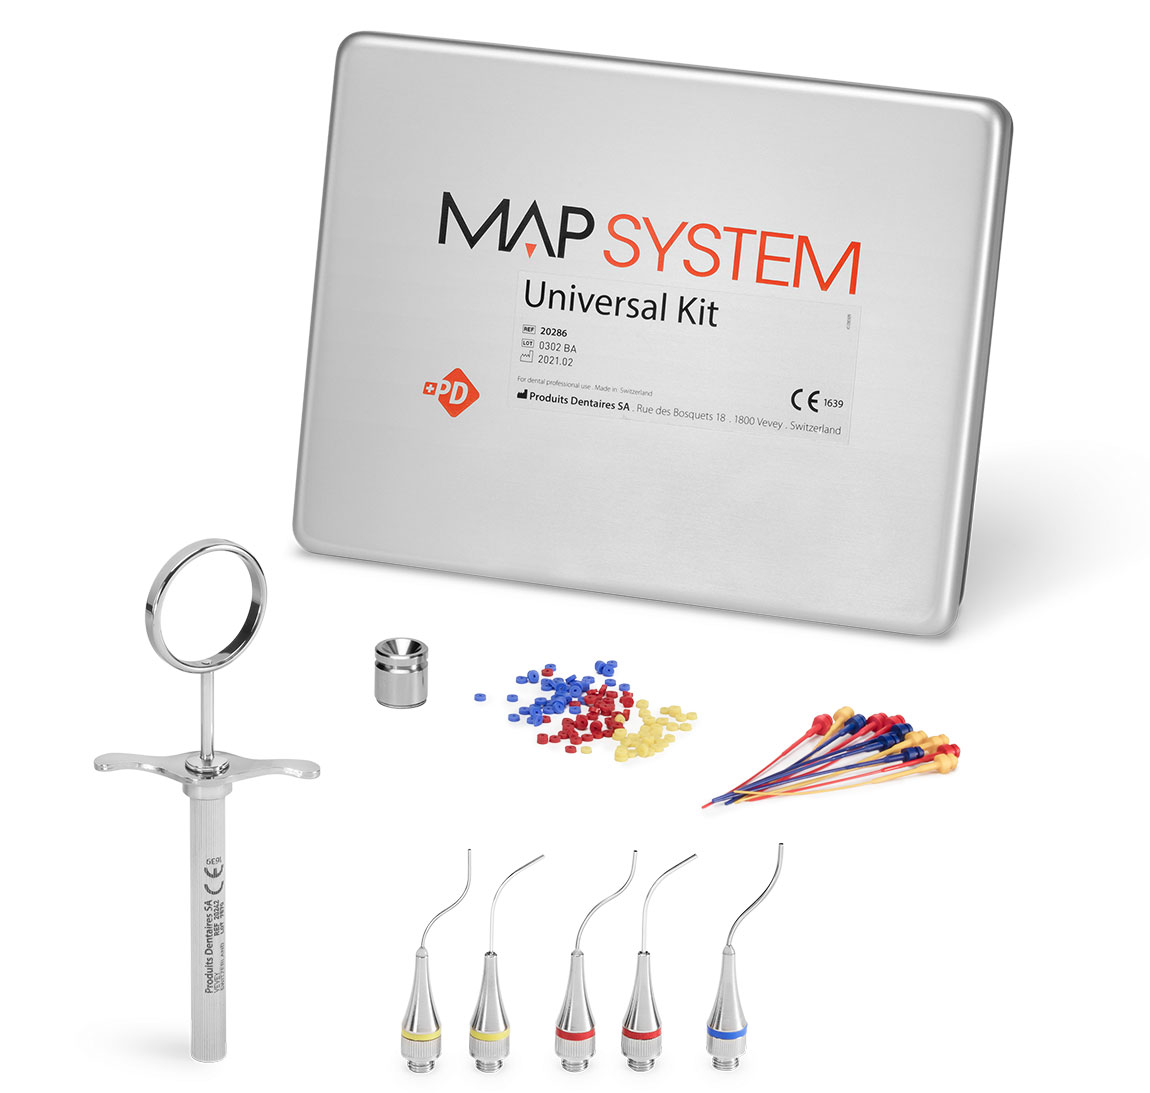 Acheter des produits MAP System Universal Kit : têtes endodontiques pour la mise en place de ciments dans les canaux radiculaires